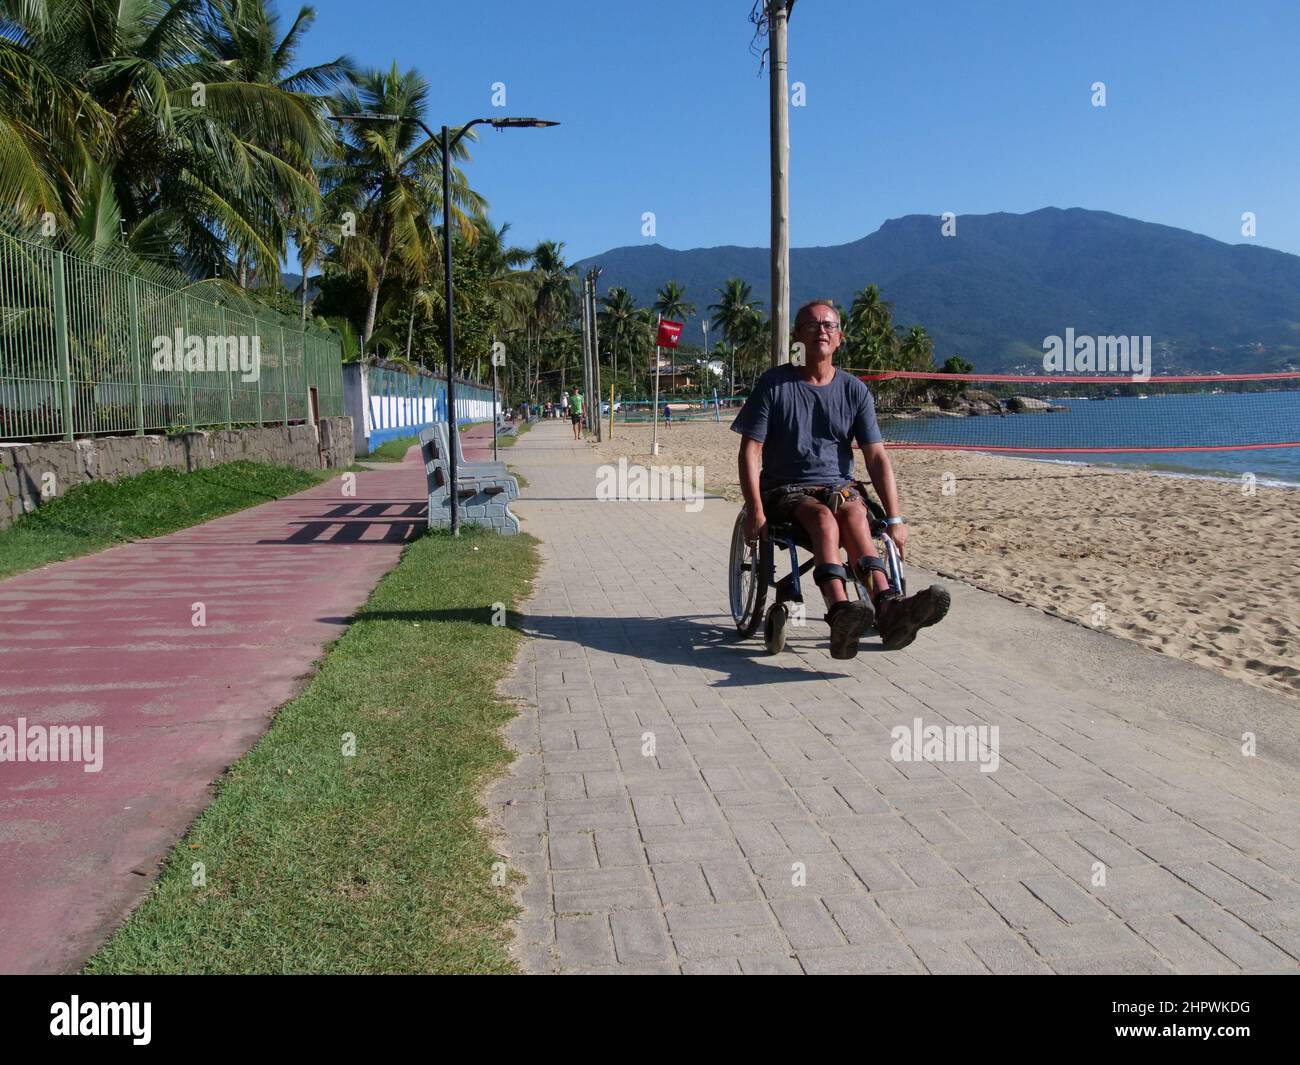 Un homme handicapé en fauteuil roulant s'approche du spectateur. Il utilise la voie piétonne de l'île d'Ilhabela, au Brésil, ce qui est très pratique Banque D'Images